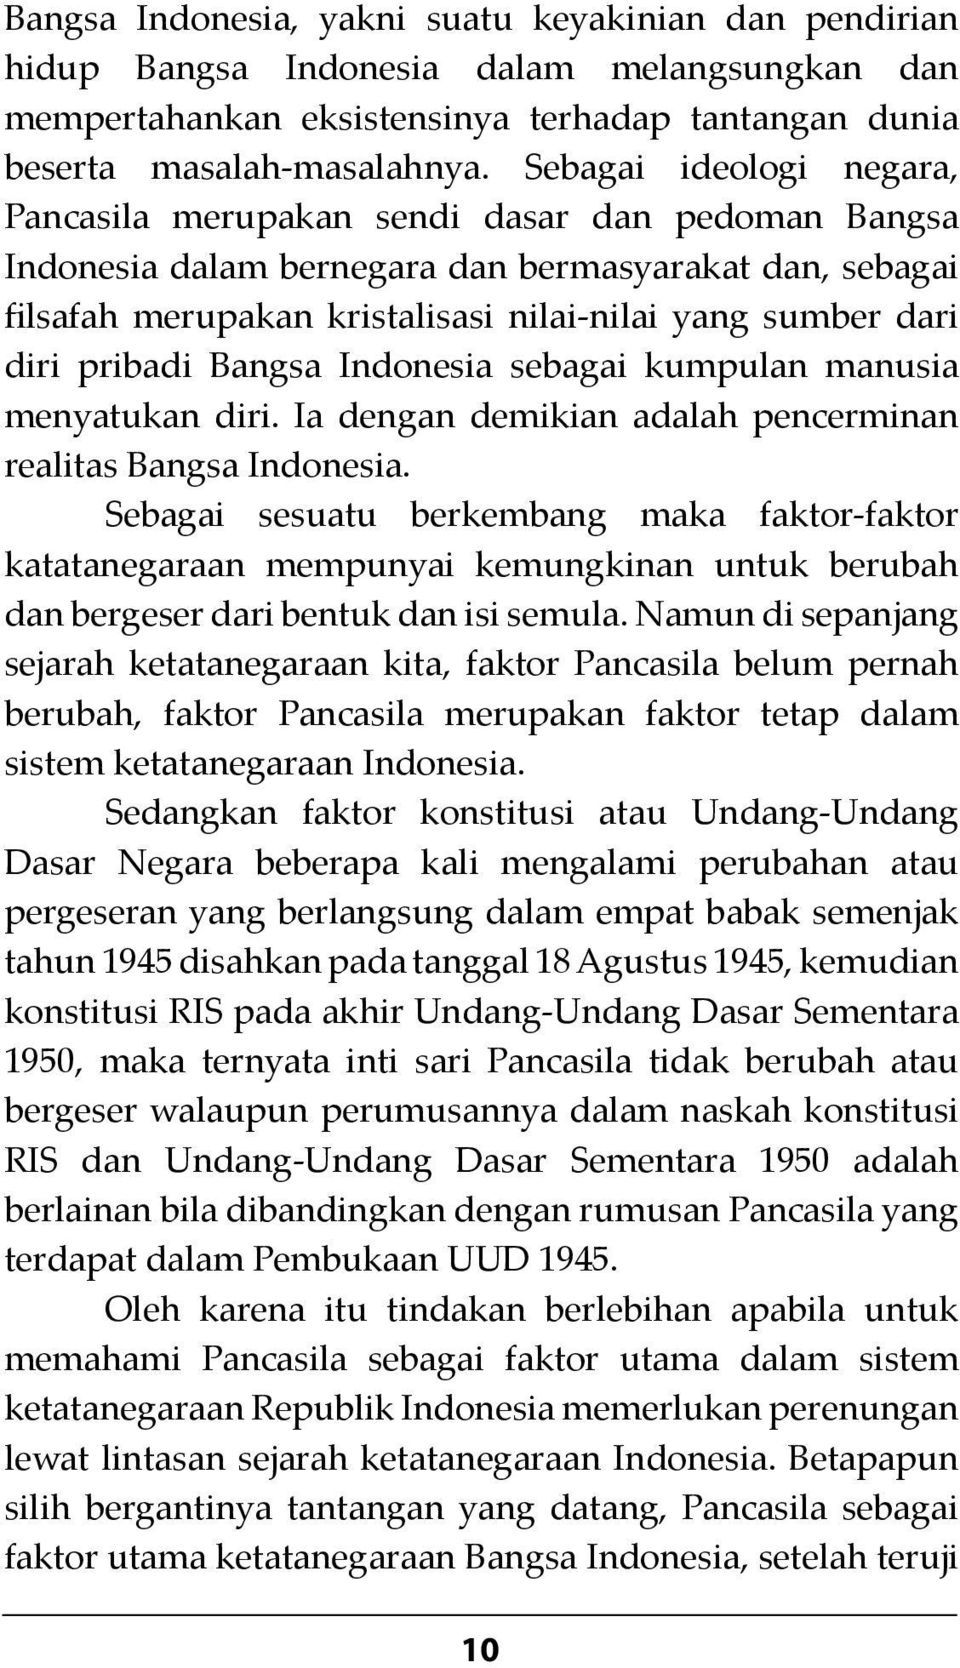 pribadi Bangsa Indonesia sebagai kumpulan manusia menyatukan diri. Ia dengan demikian adalah pencerminan realitas Bangsa Indonesia.